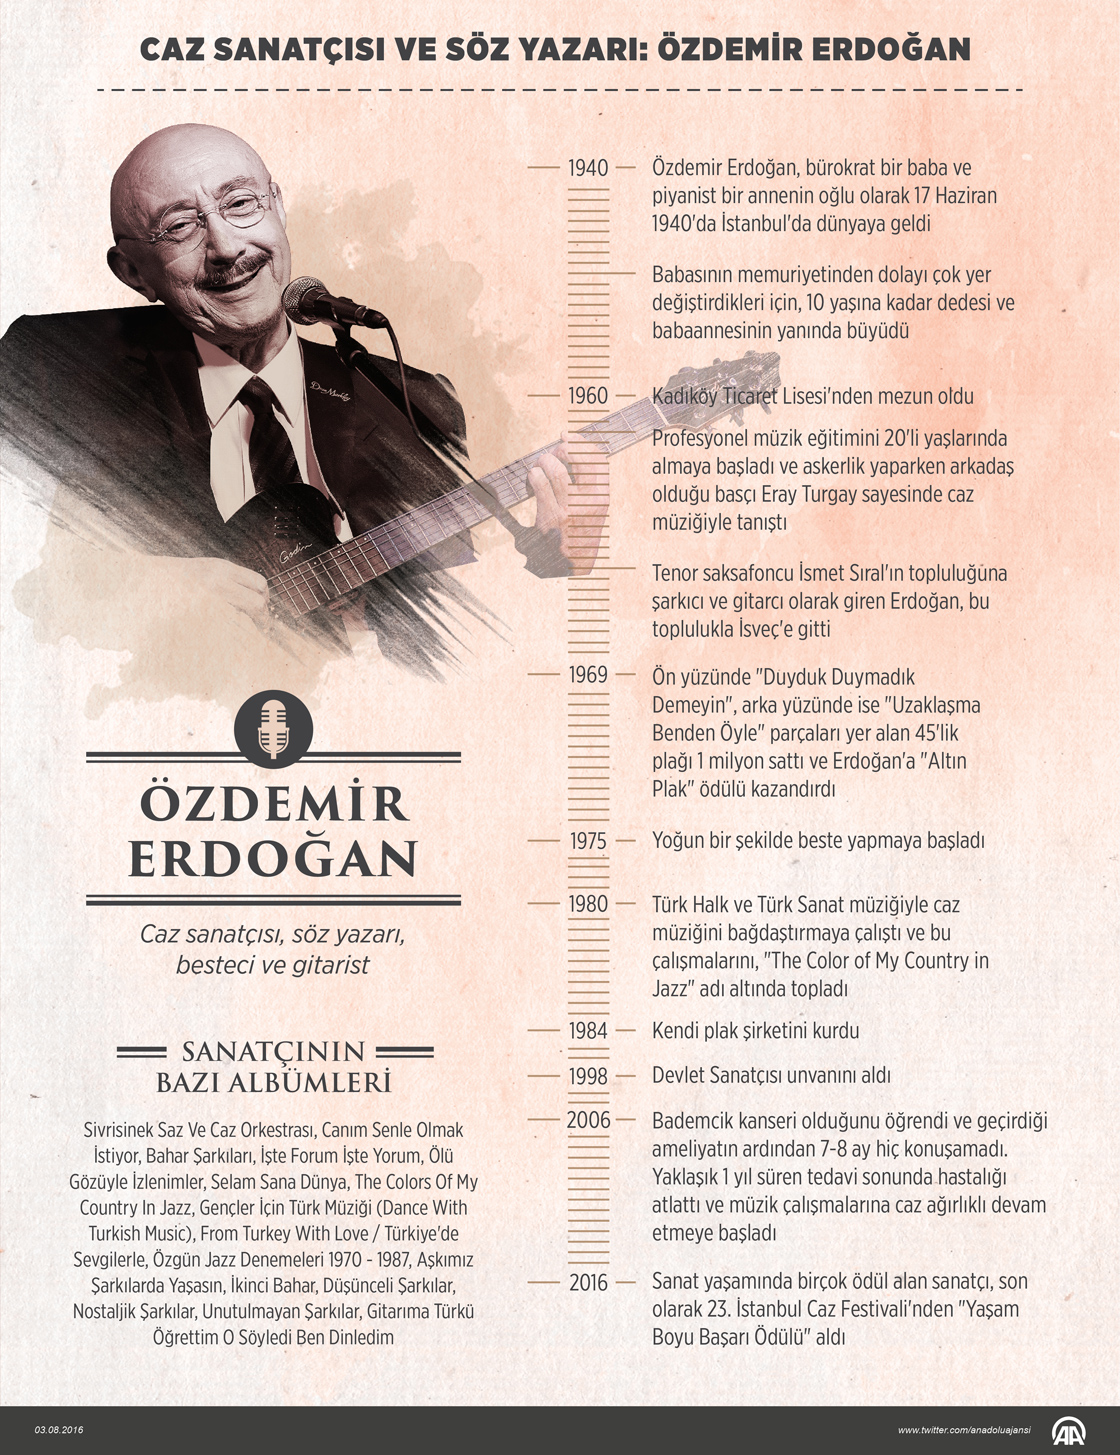 Caz sanatçısı, söz yazarı, besteci ve gitarist Özdemir Erdoğan